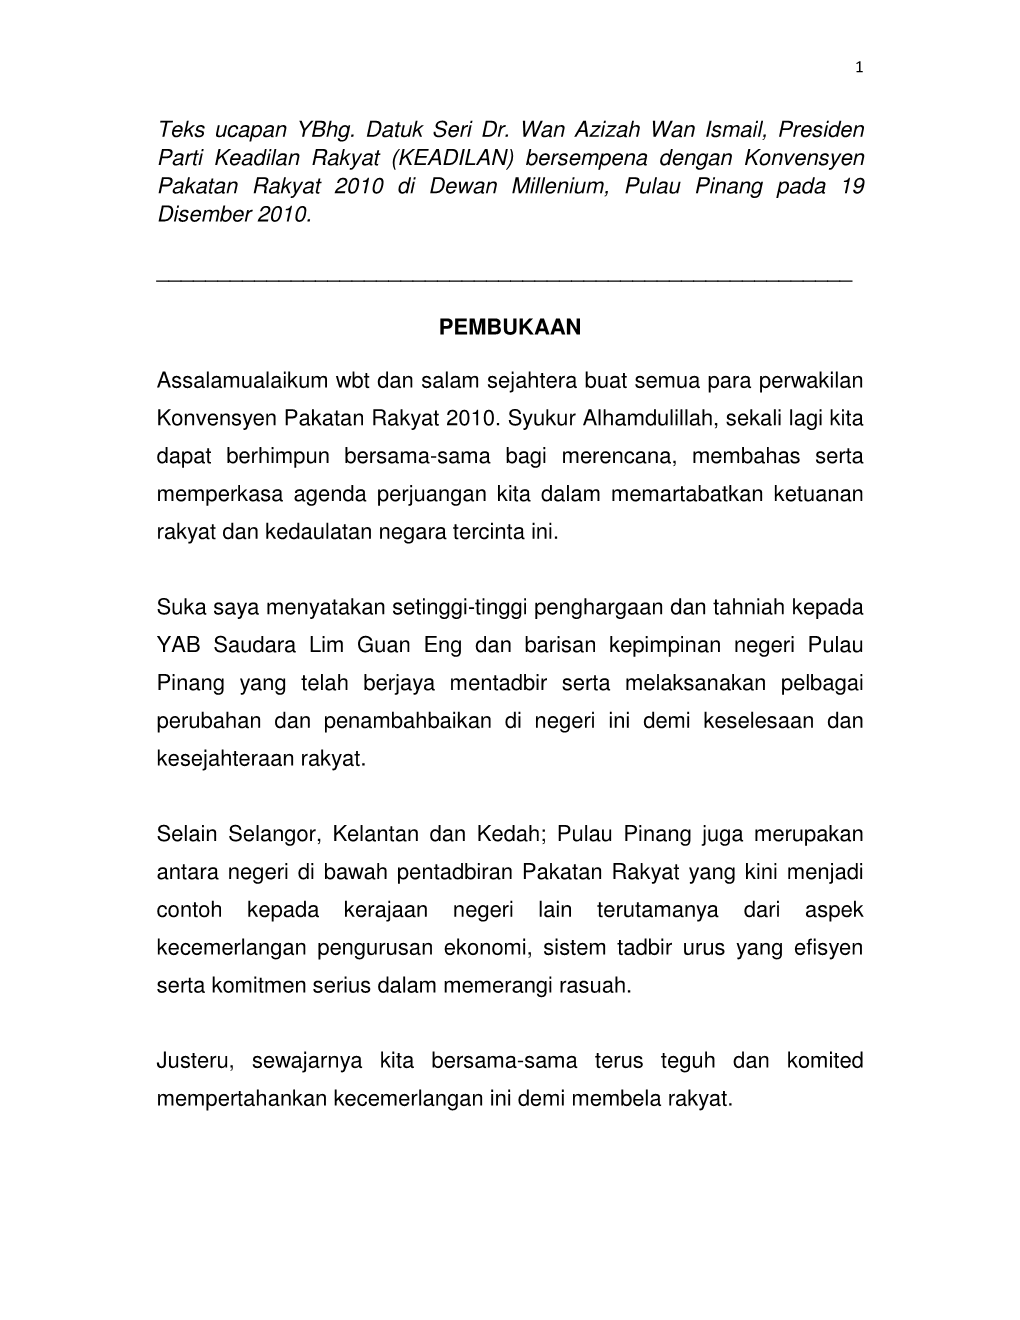 Teks Ucapan Ybhg. Datuk Seri Dr. Wan Azizah Wan Ismail, Presiden Parti Keadilan Rakyat (KEADILAN) Bersempena Dengan Konvensyen P